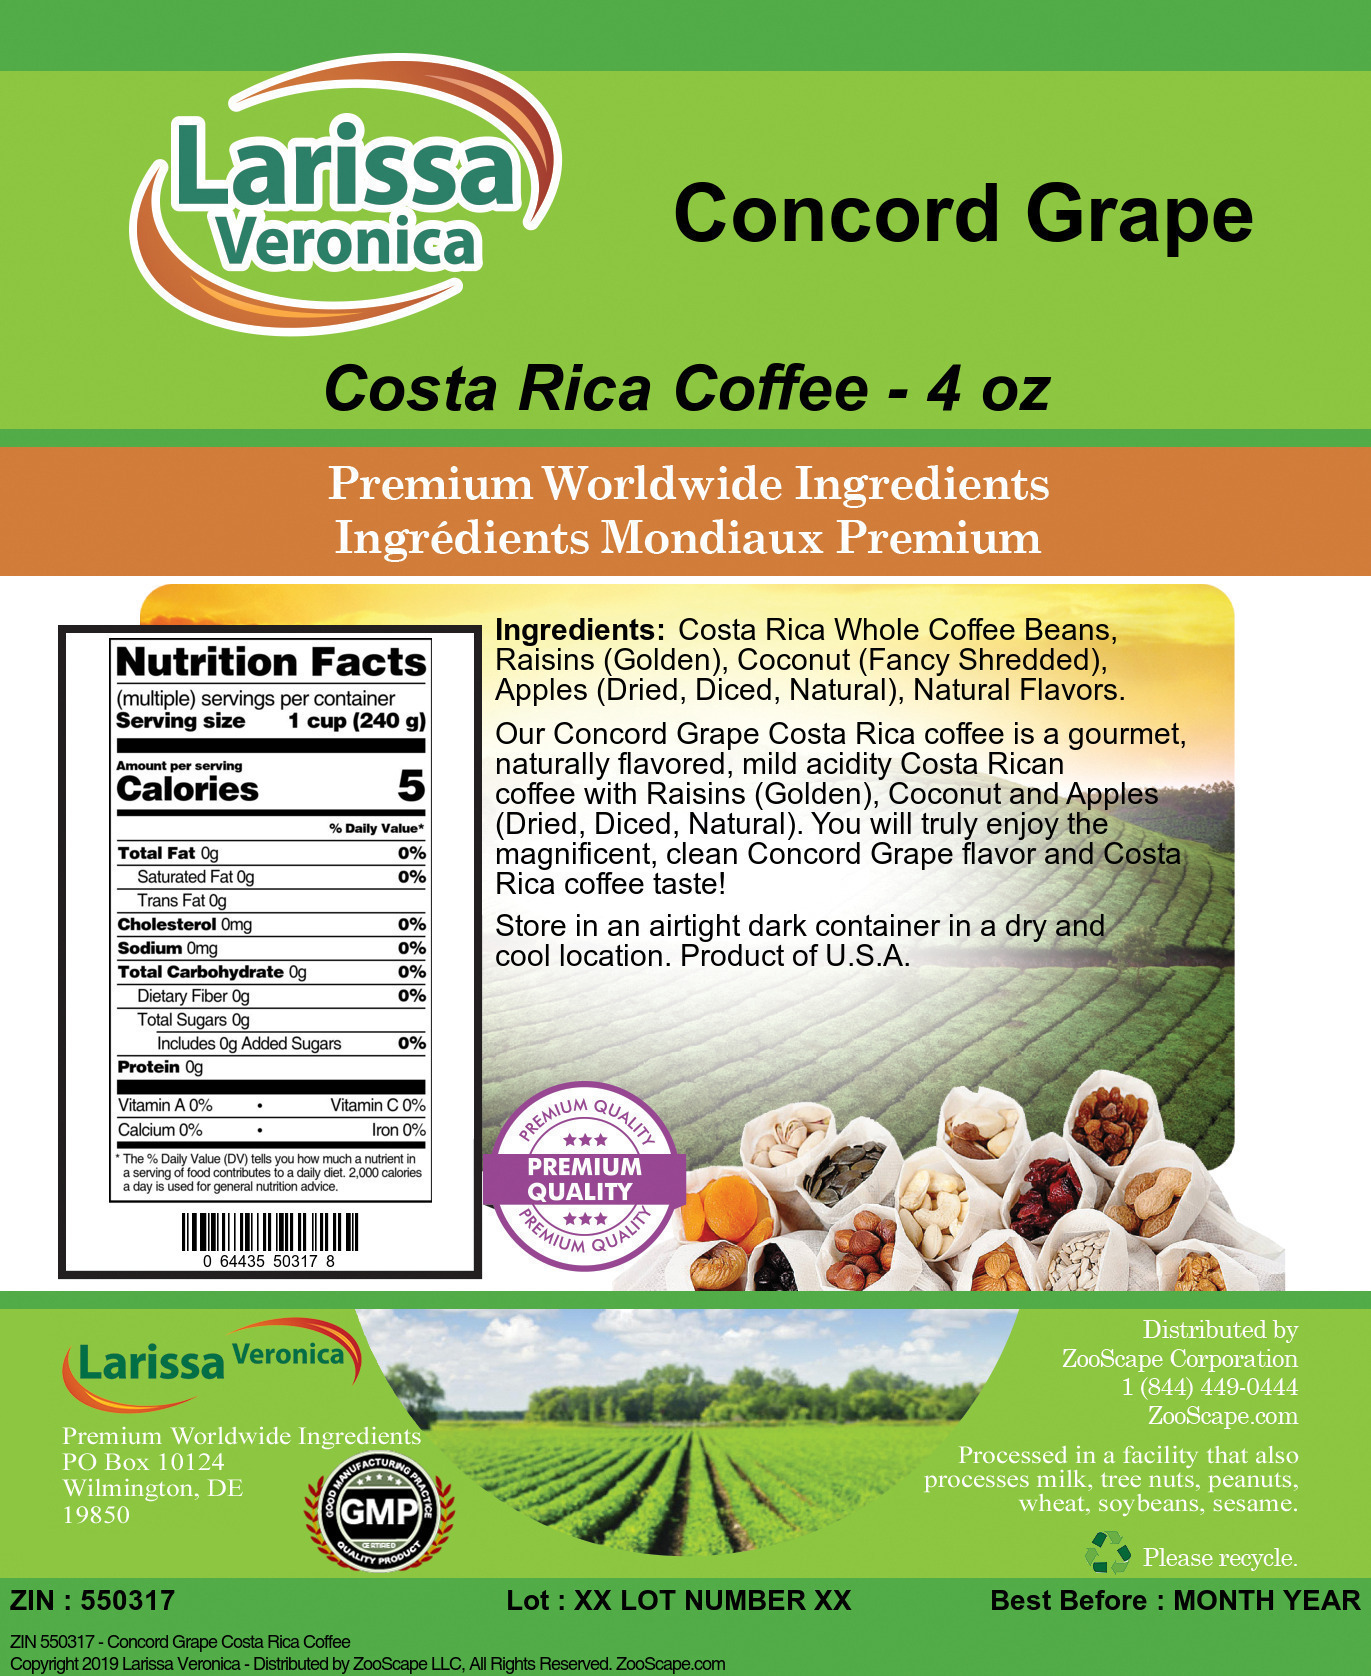 Concord Grape Costa Rica Coffee - Label